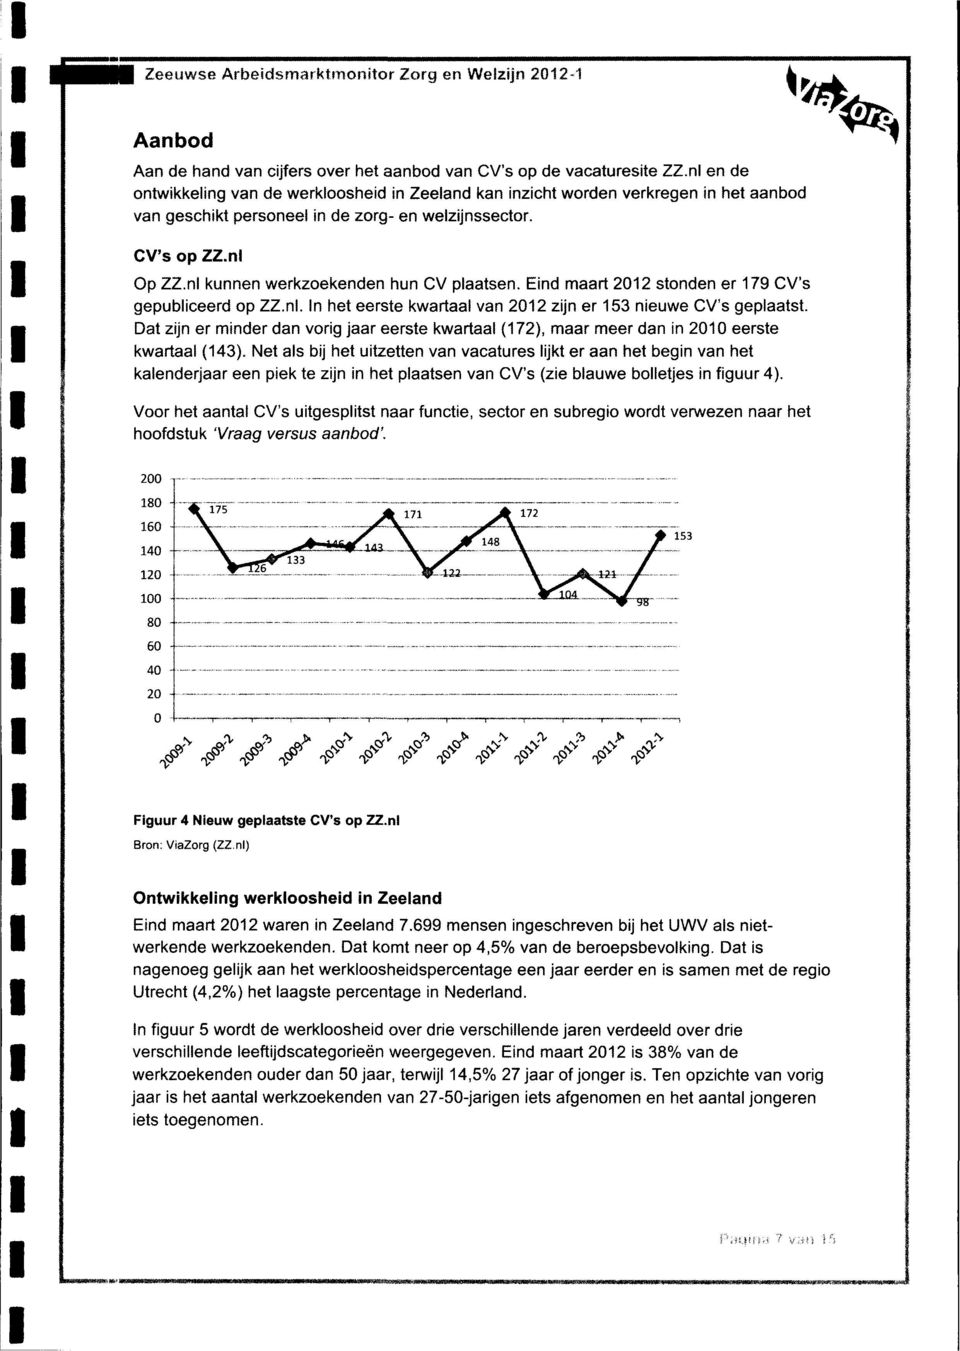 nl kunnen werkzoekenden nun CV plaatsen. Eind maart 2012 stonden er 179 CV's gepubliceerd op ZZ.nl. In het eerste kwartaal van 2012 zijn er 153 nieuwe CV's geplaatst.